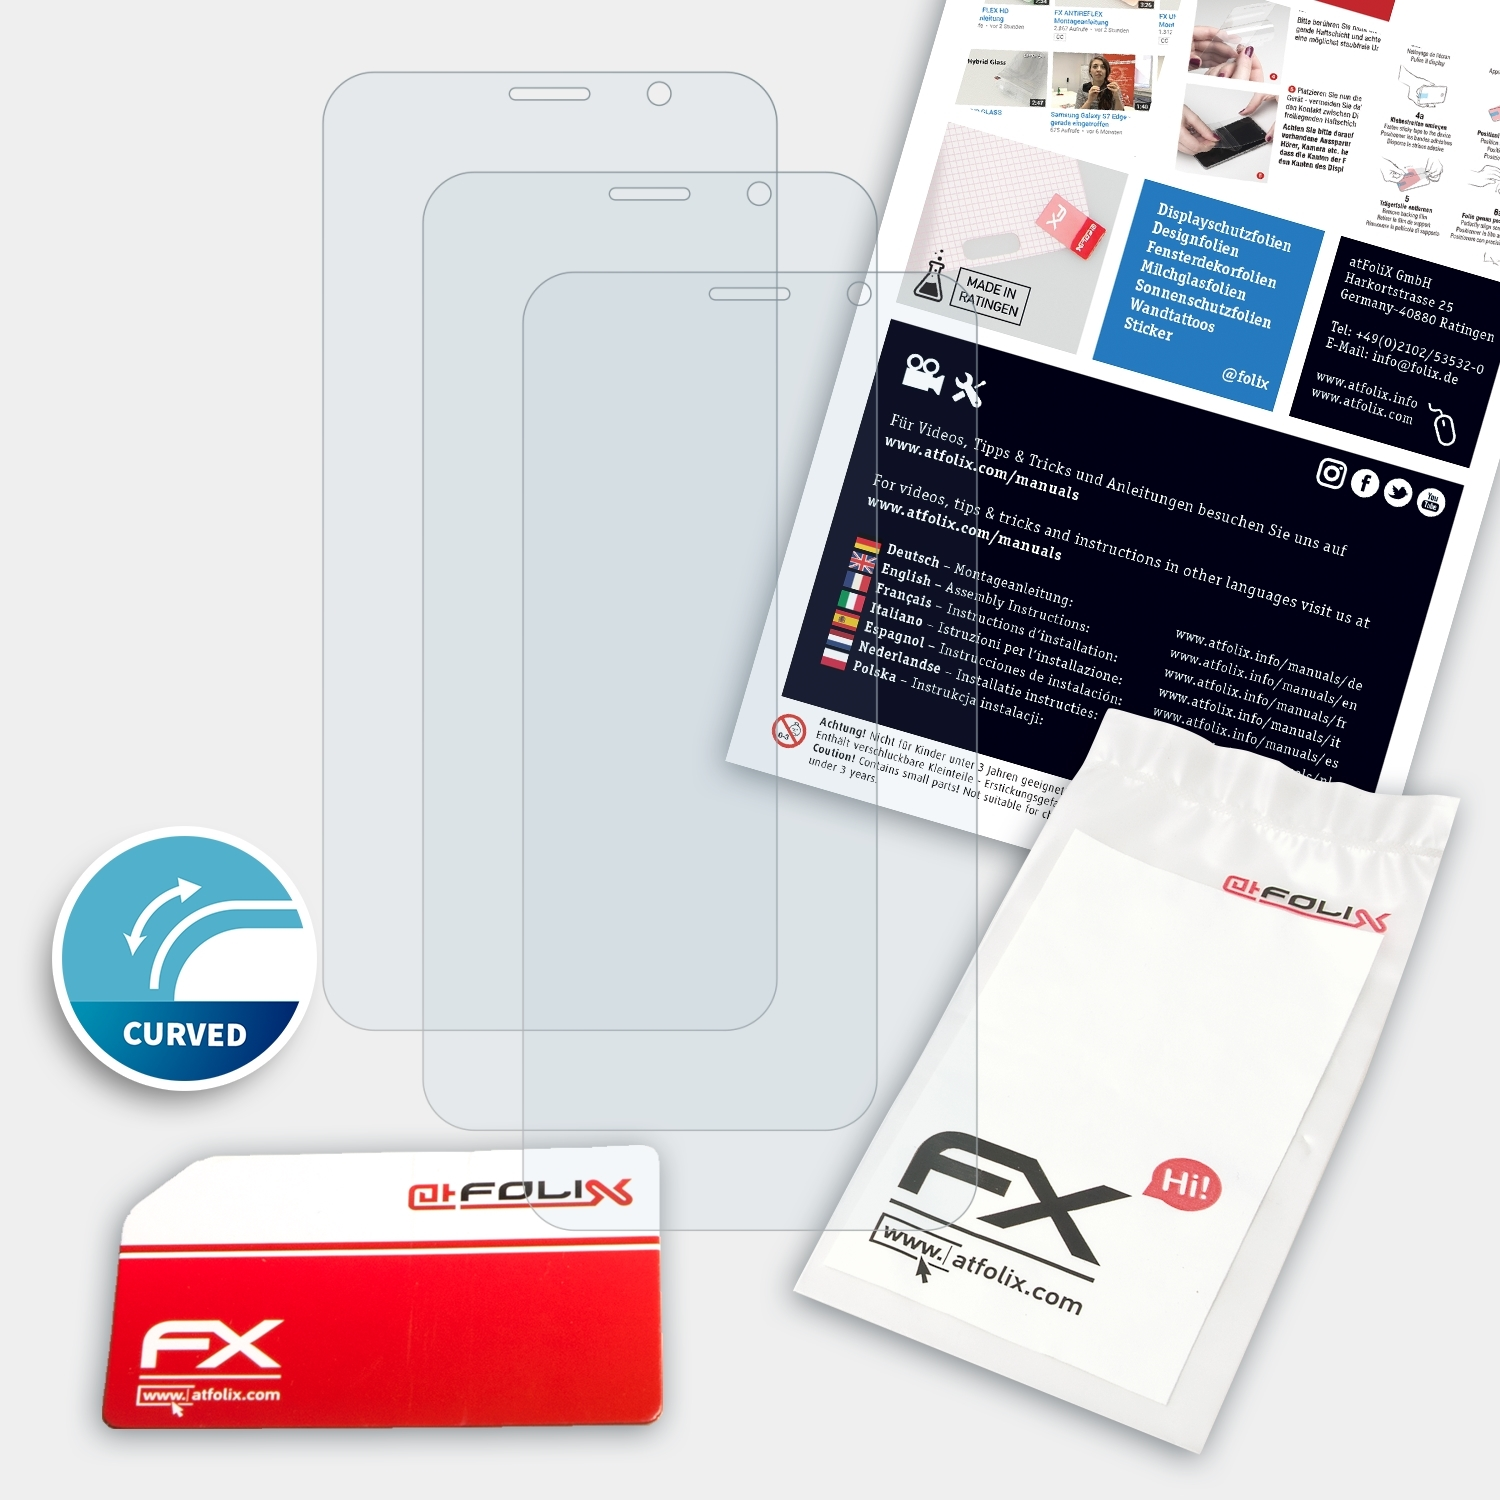 3x ATFOLIX Displayschutz(für RS) FX-ActiFleX Mate Huawei